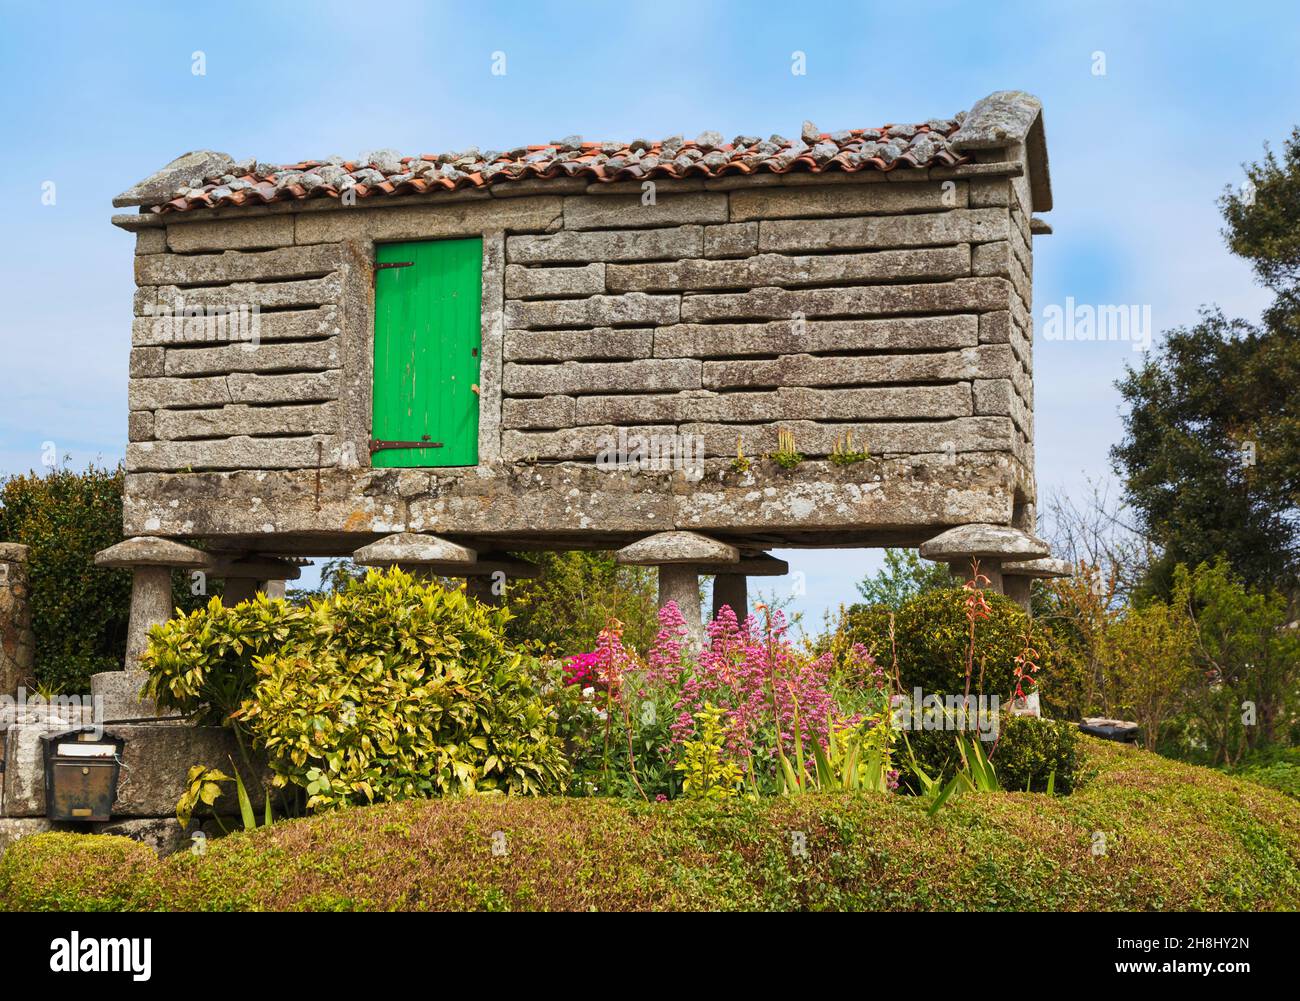 Typischer Steinhorreo, oder Getreidespeicher, in Castrelo, La Coruna, Galicien, Spanien. Die Pfeiler, die die Struktur stützen, sind mit pilzförmigem Addel bedeckt Stockfoto